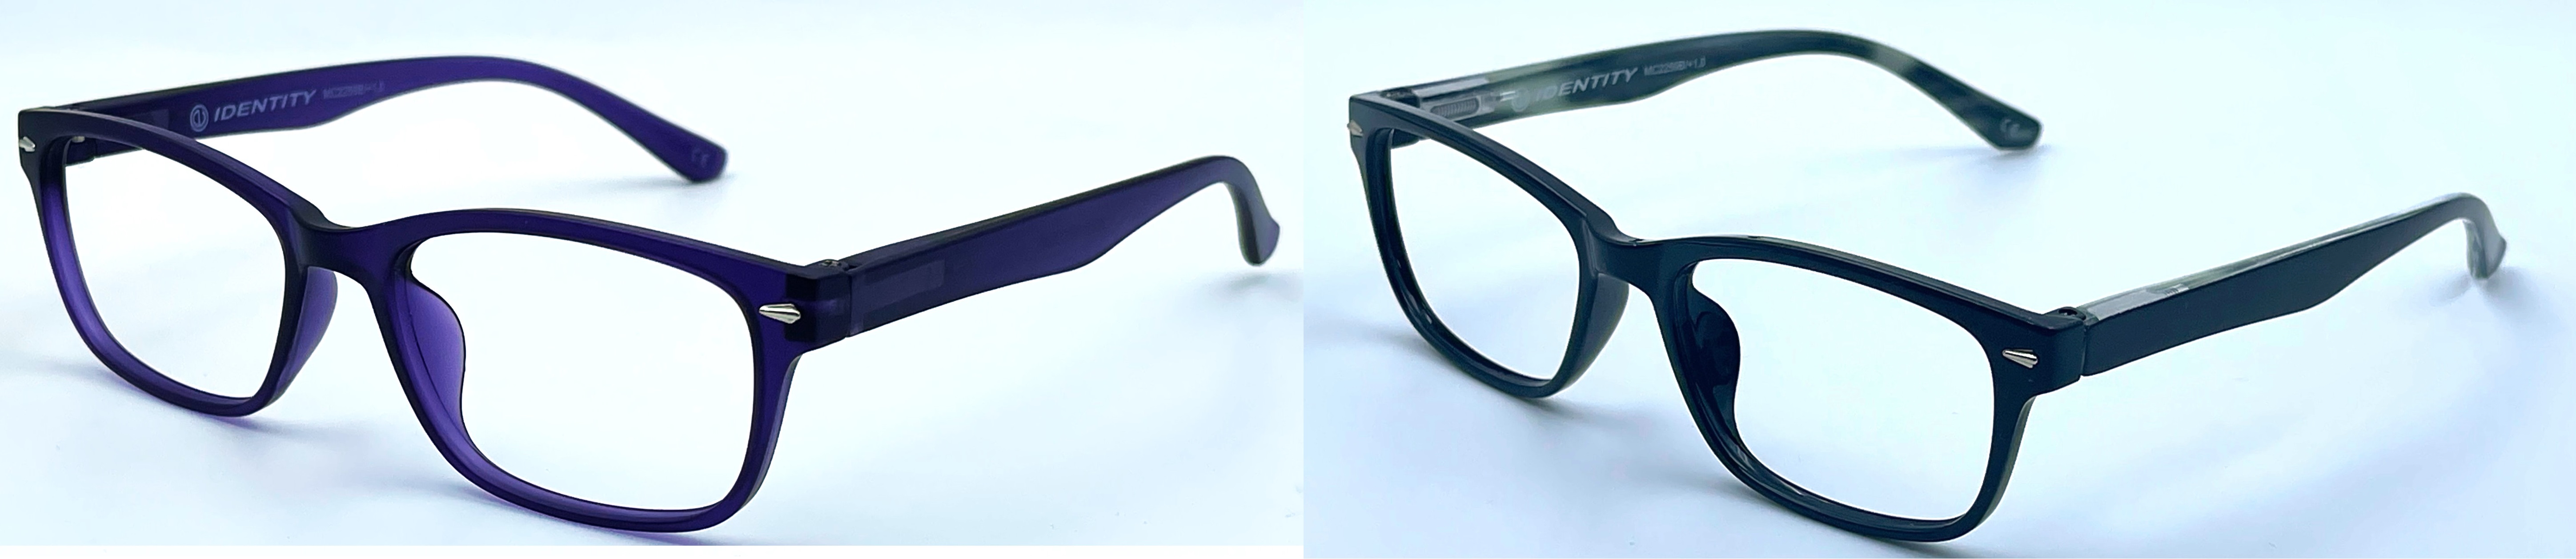 Dioptrické čtecí brýle MC2259B/3,0. S pouzdrem.  -